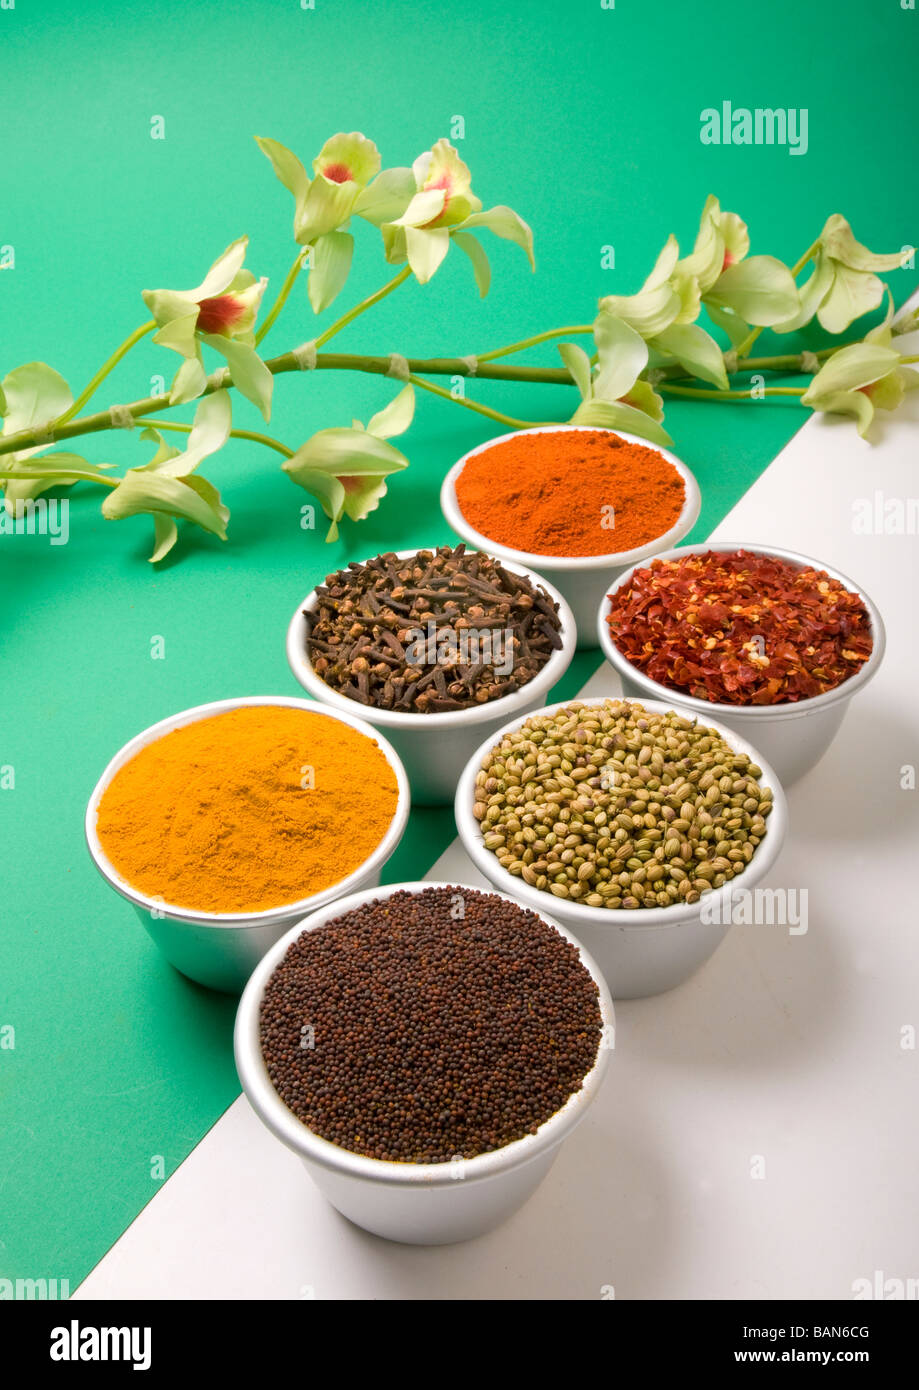 Replikation eines Spice-Szene im Studio, erinnert an Kerala, Indien, wie kürzlich bei einem Fotoshooting gesehen. Stockfoto